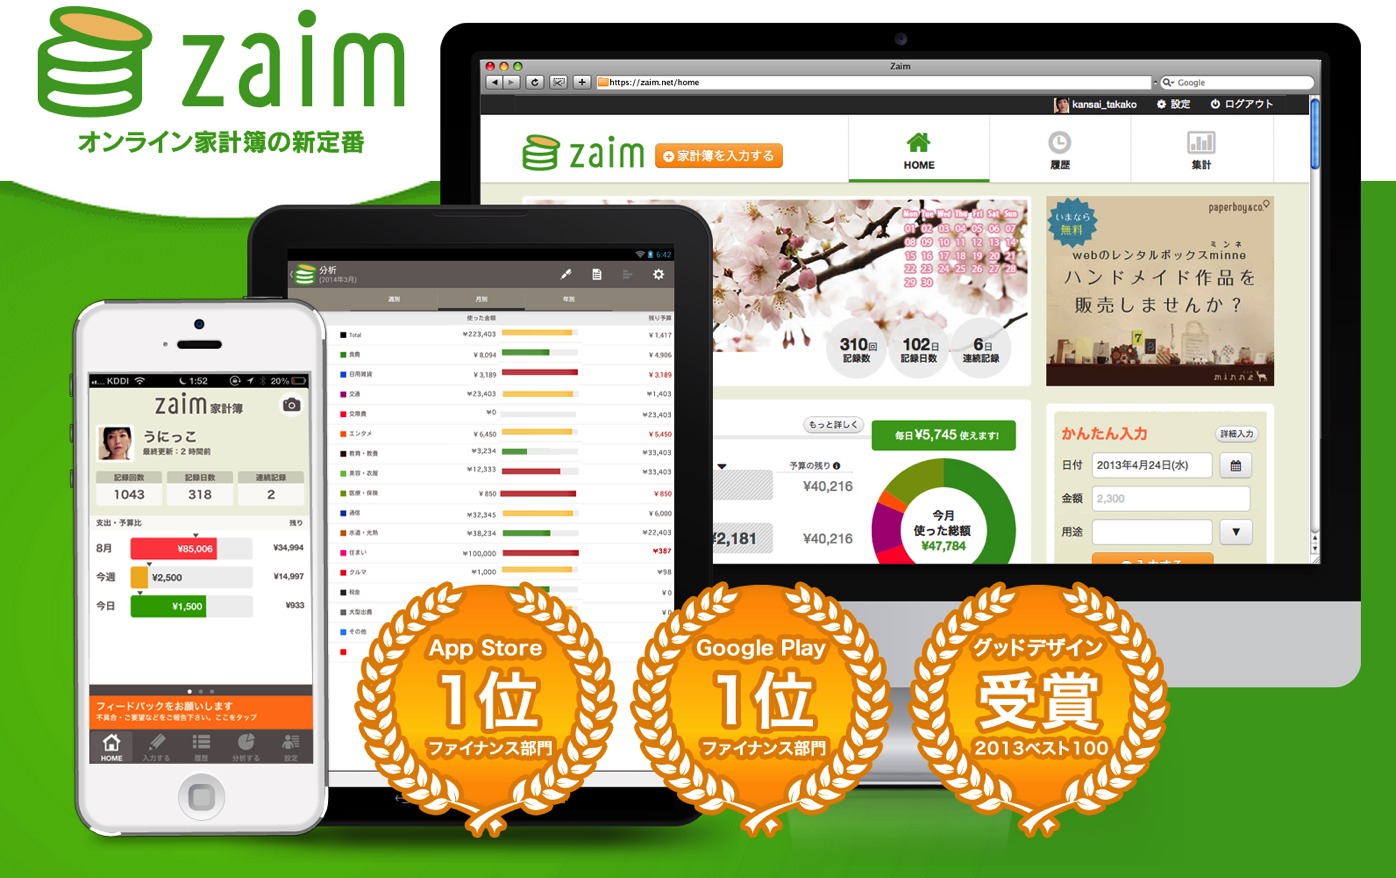 [iPhone]ランチャーを使った一瞬起動の家計簿アプリ「Zaim」が便利過ぎる件